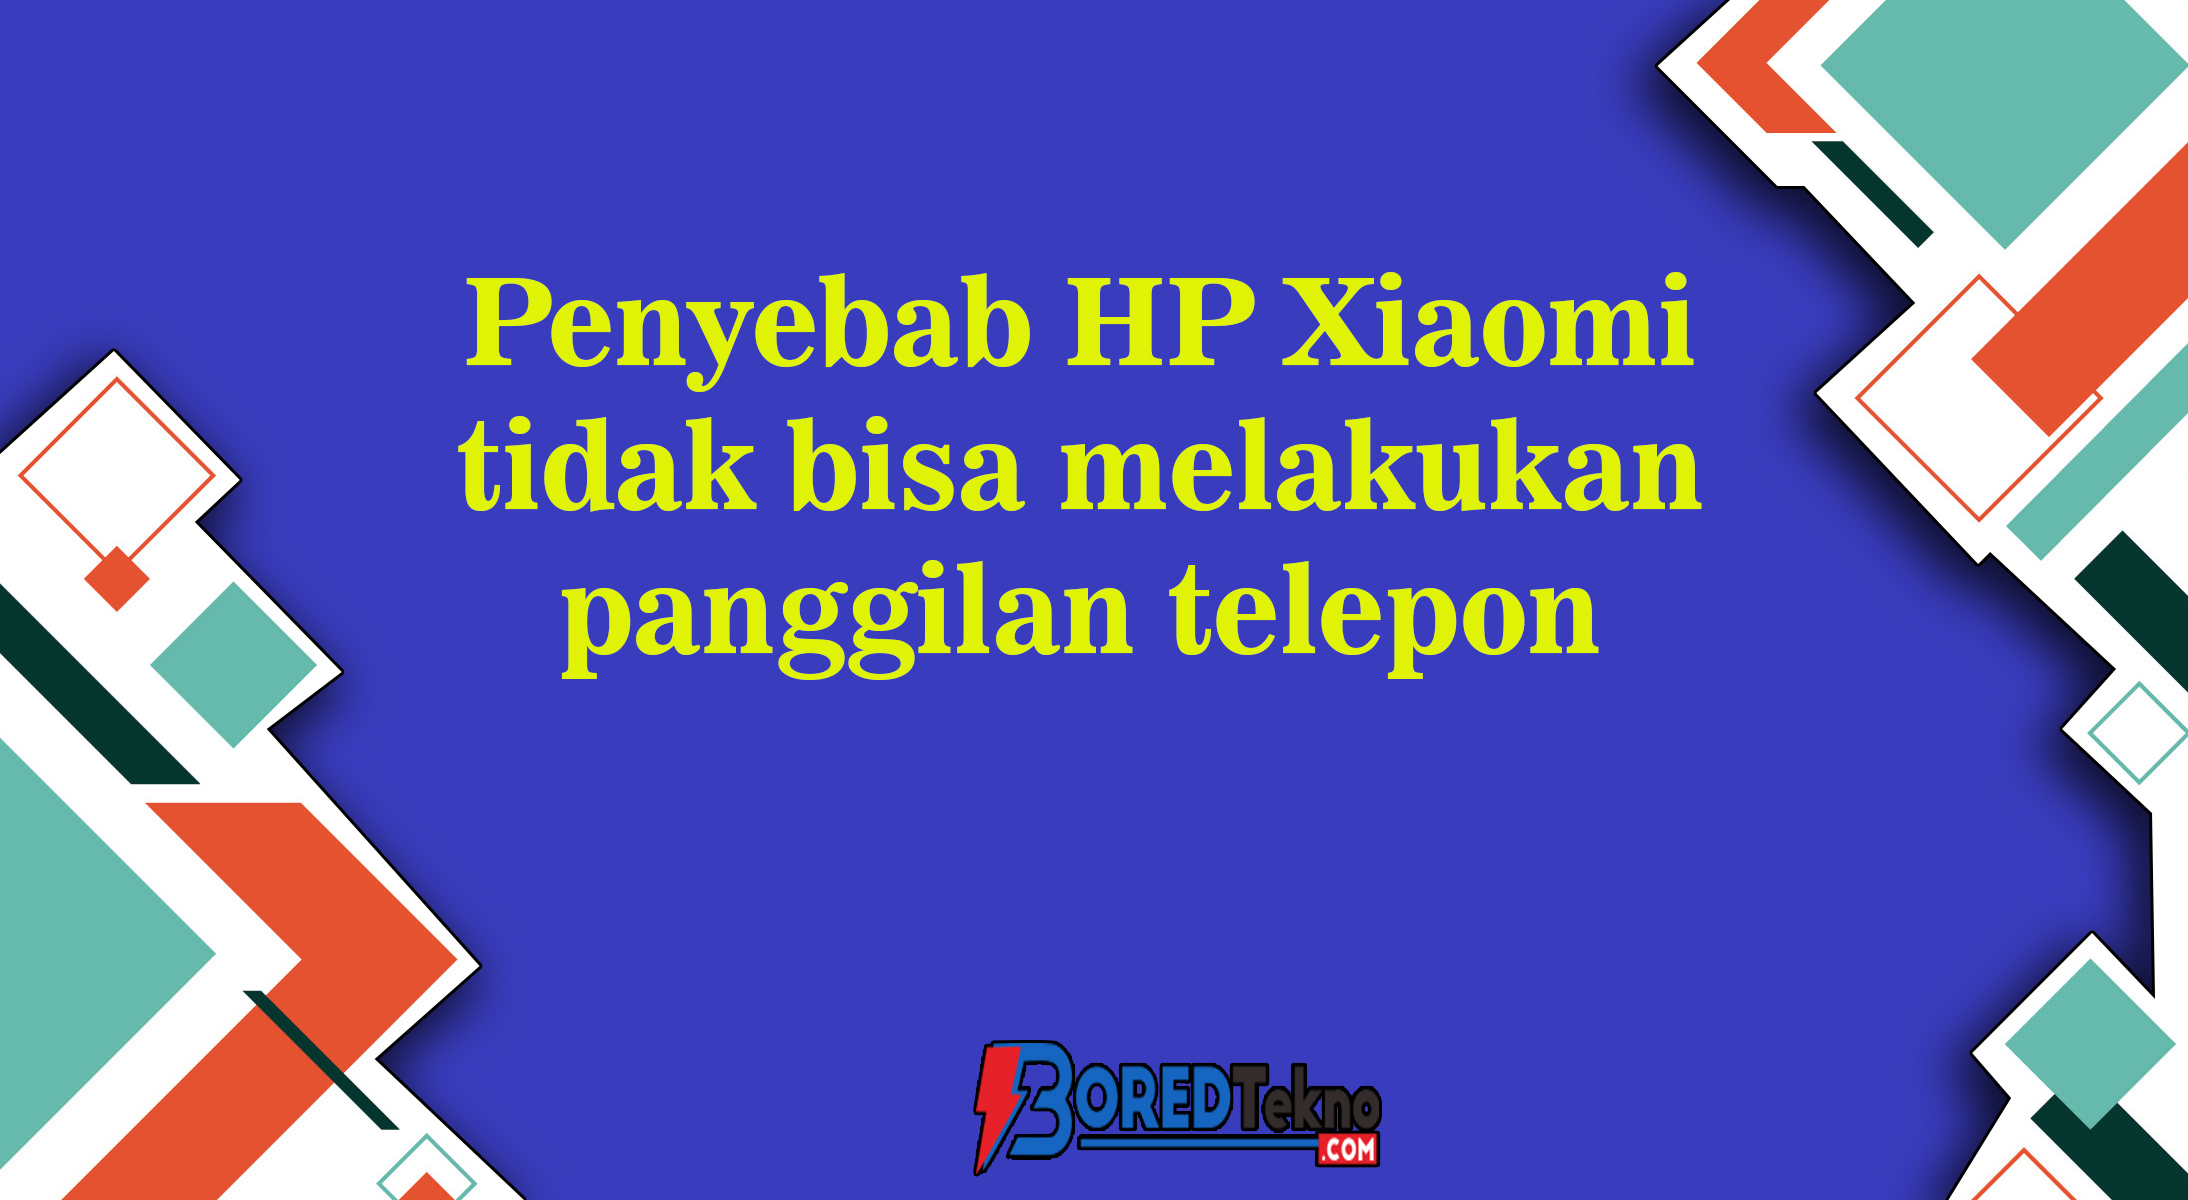 Penyebab HP Xiaomi tidak bisa melakukan panggilan telepon